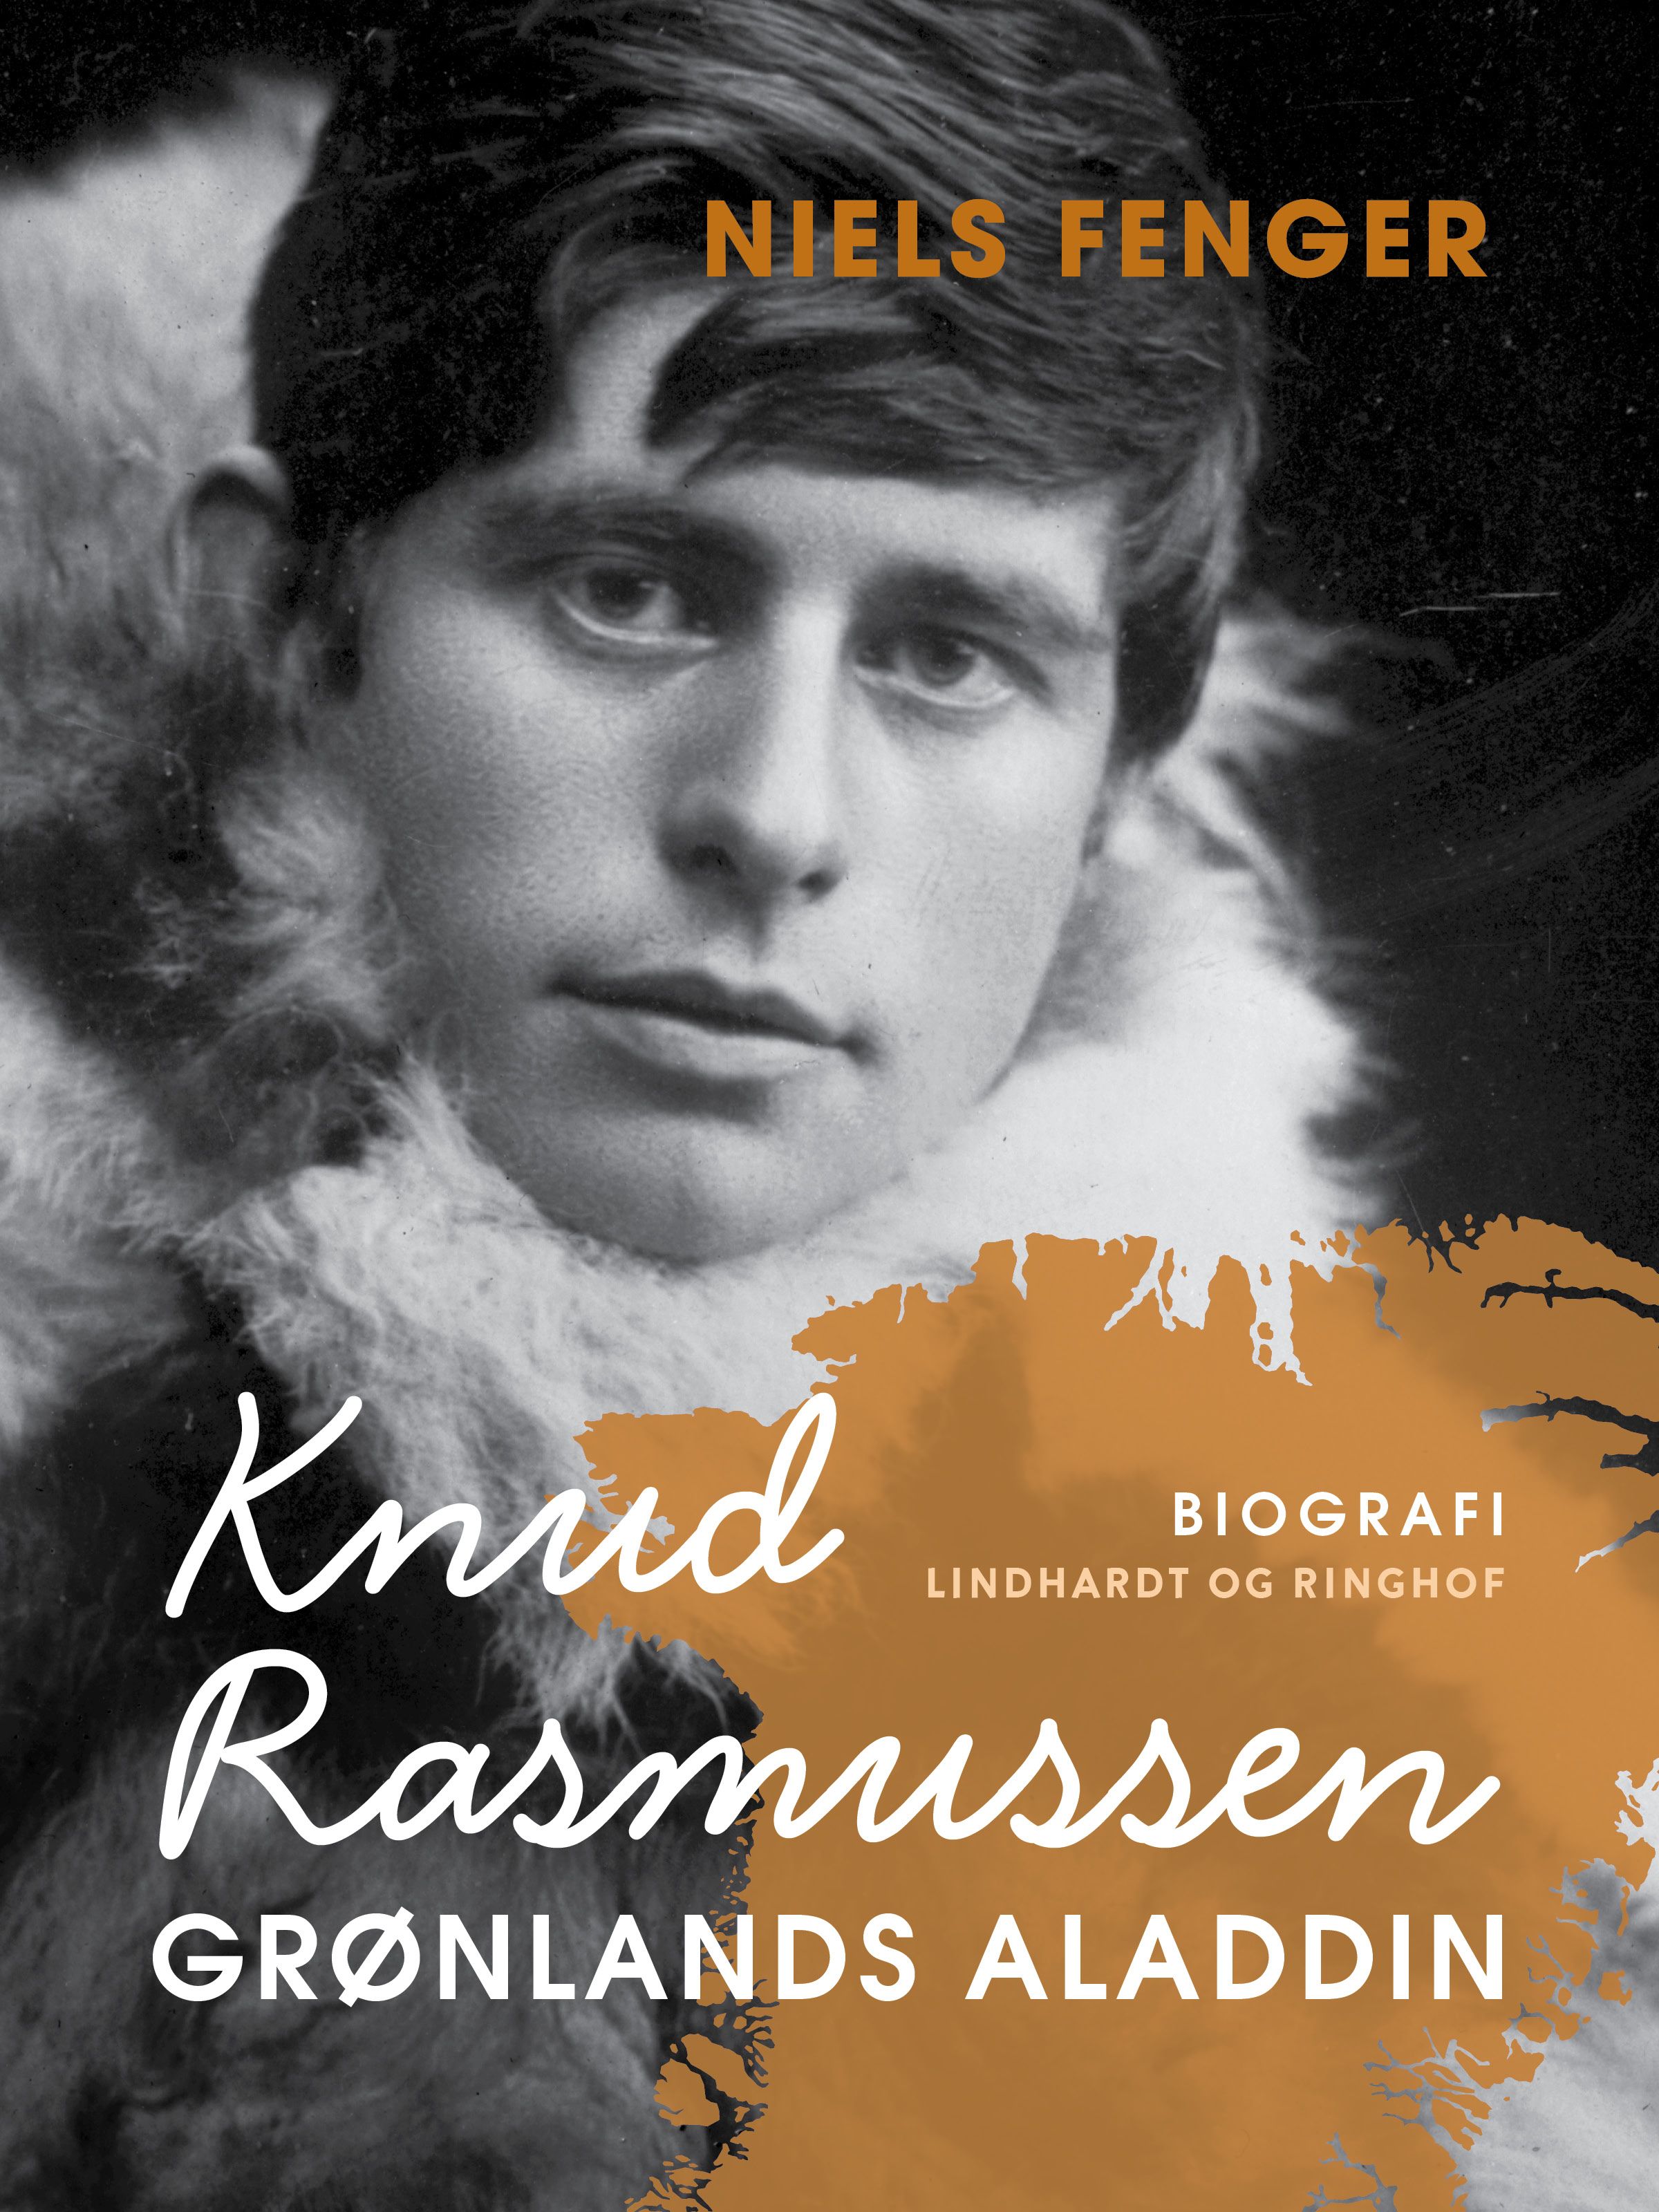 Knud Rasmussen. Grønlands Aladdin, e-bok av Niels Fenger